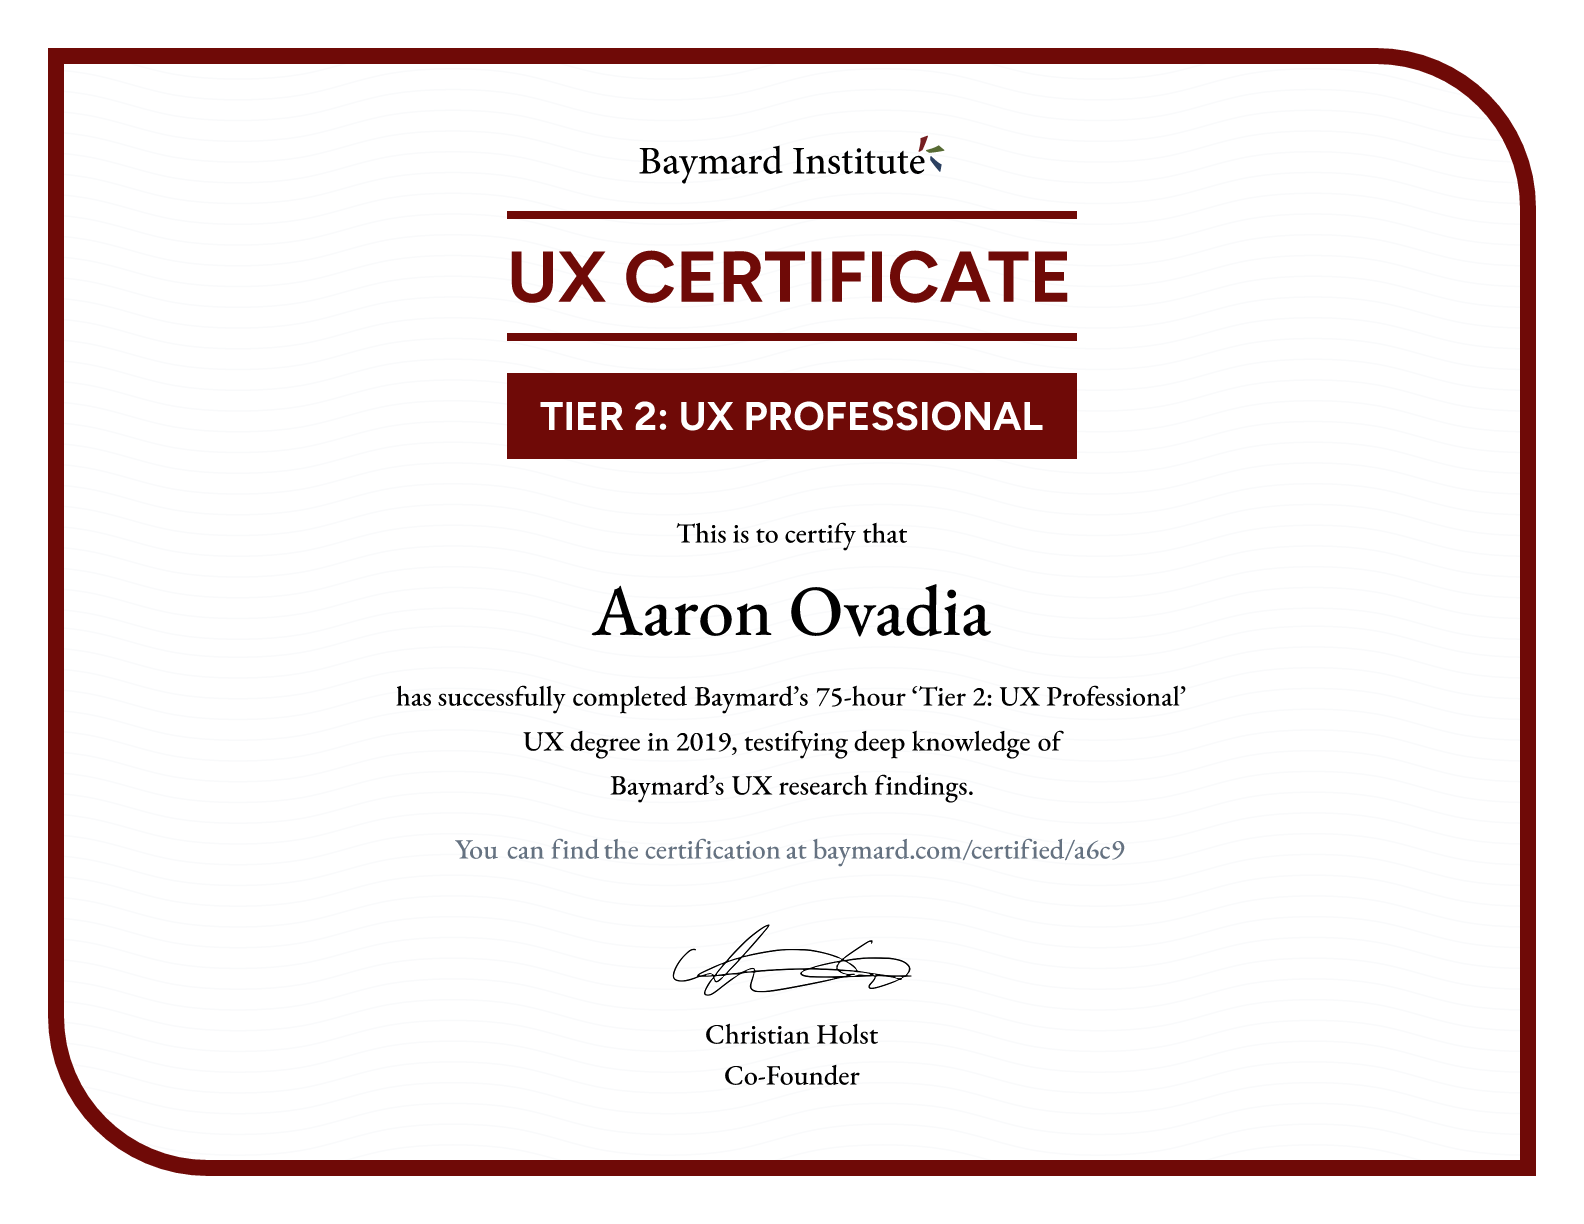 Aaron Ovadia’s certificate